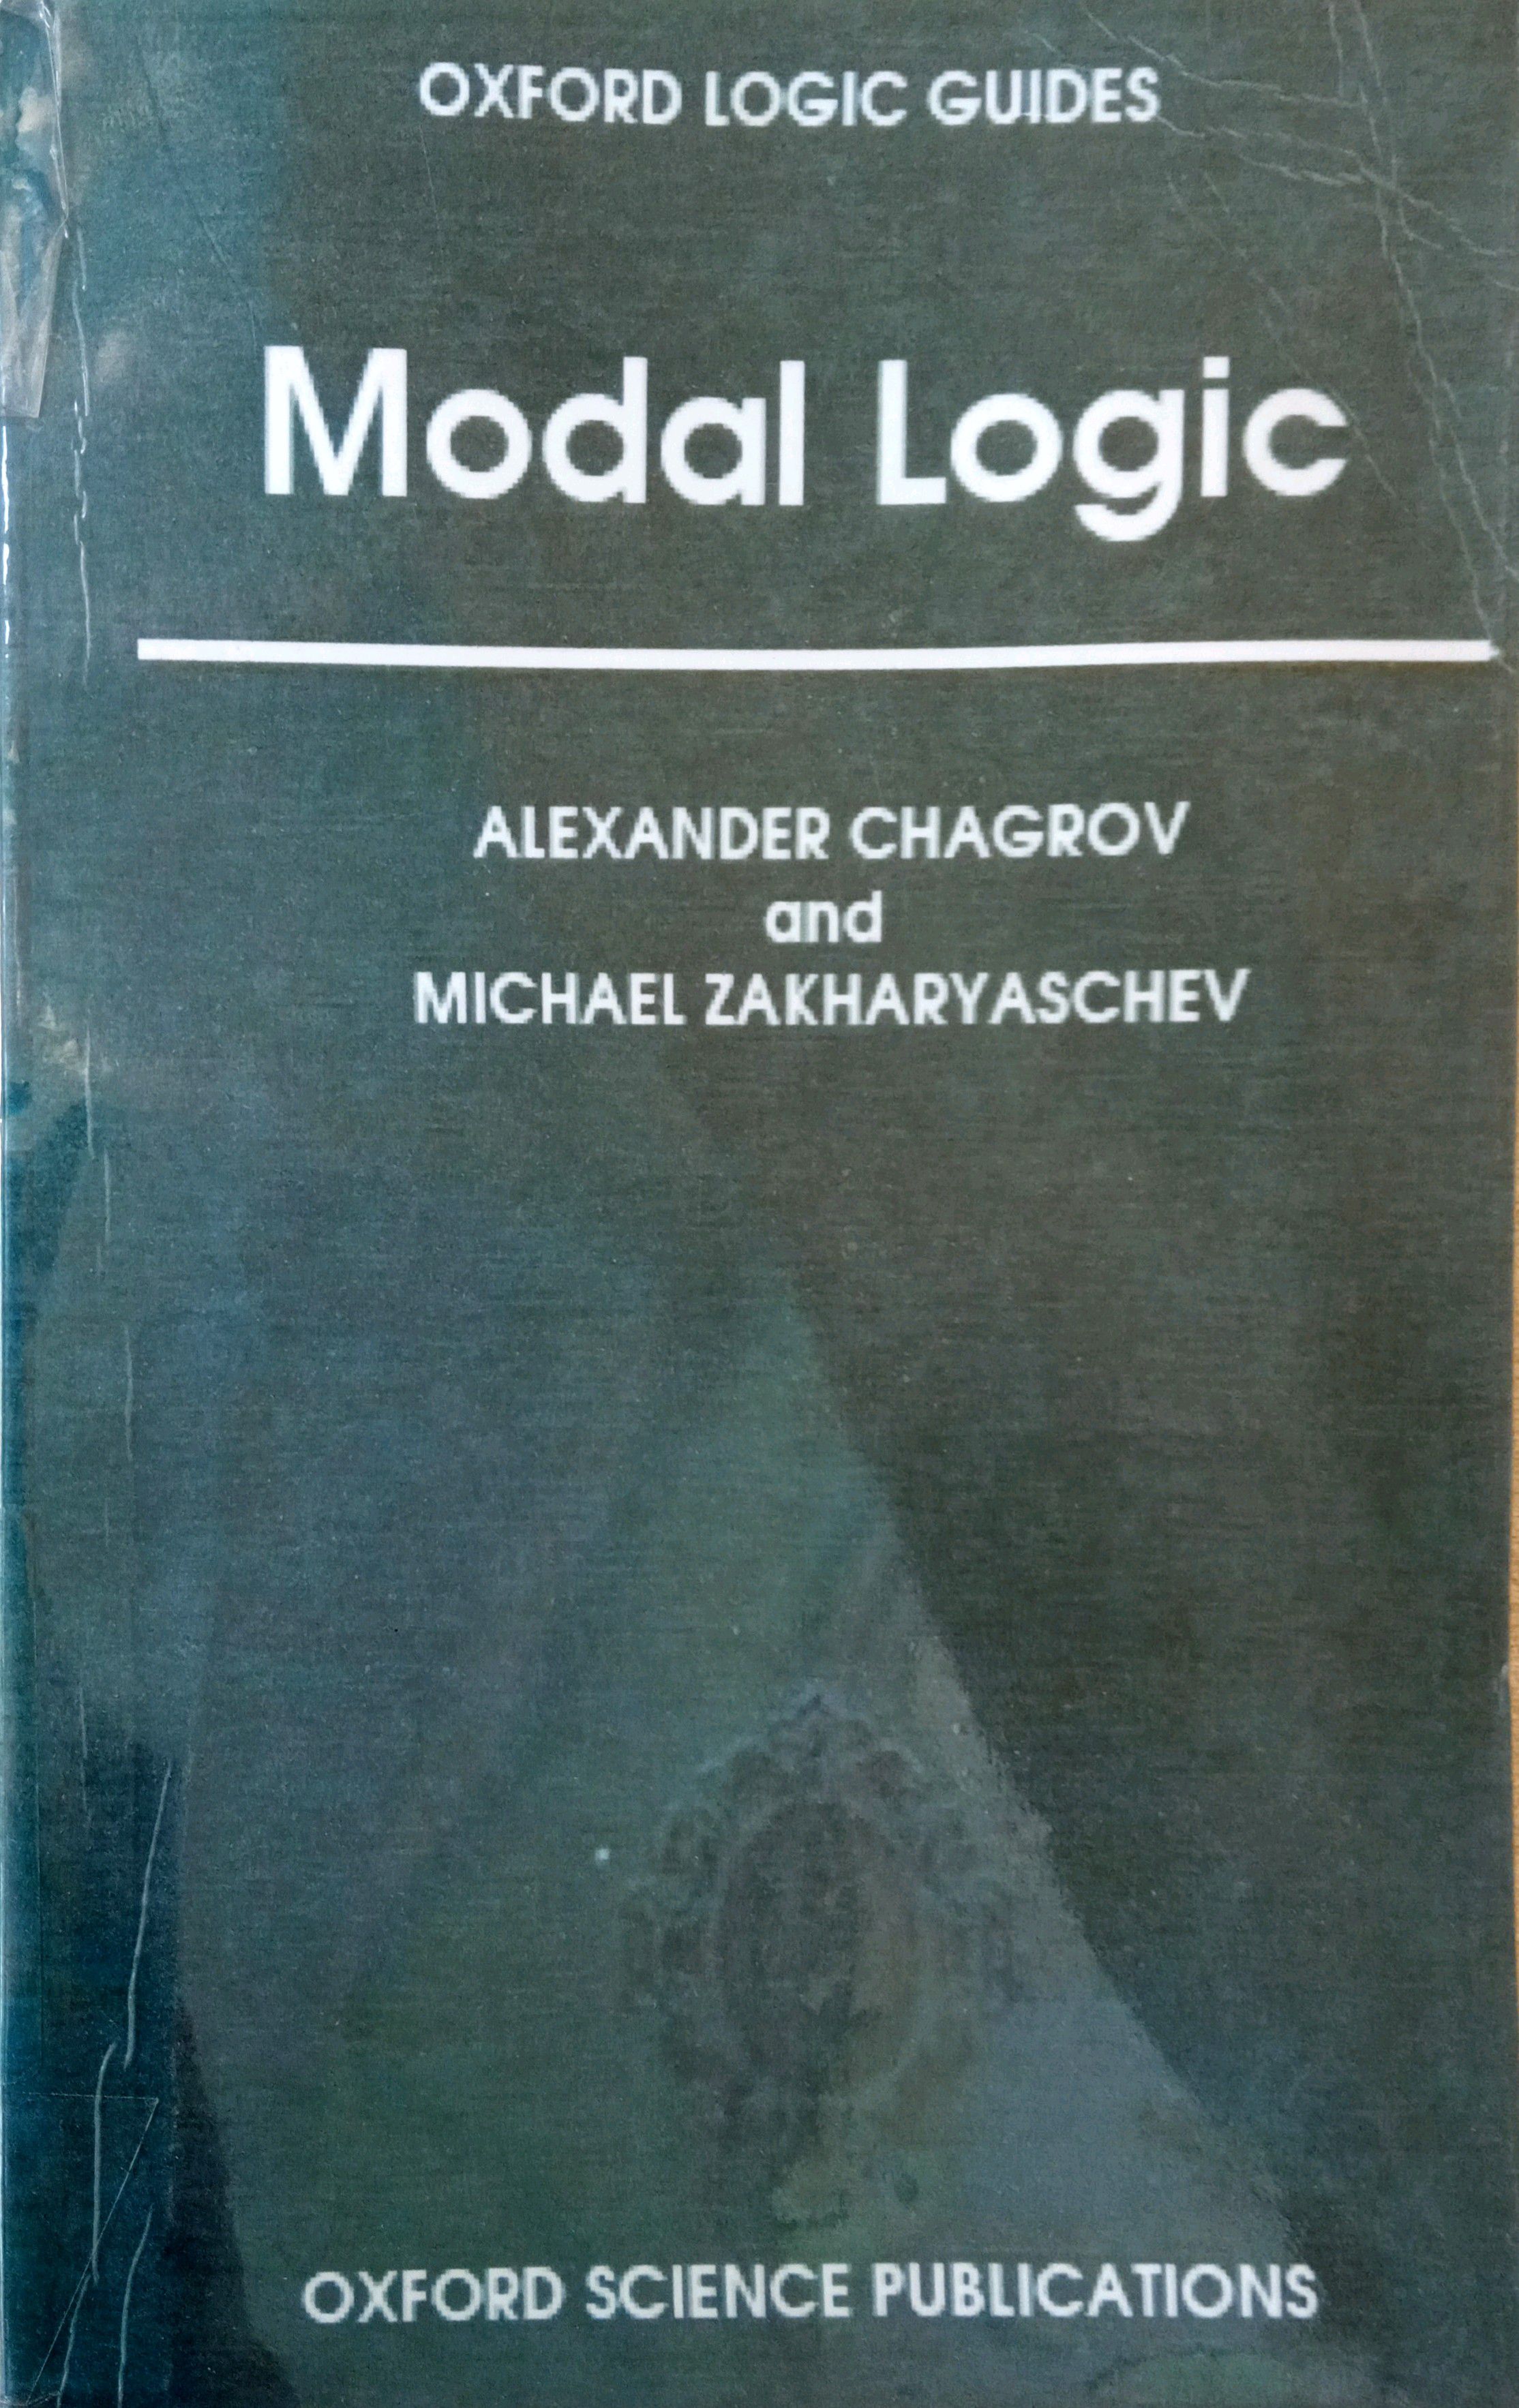 MODAL LOGIC